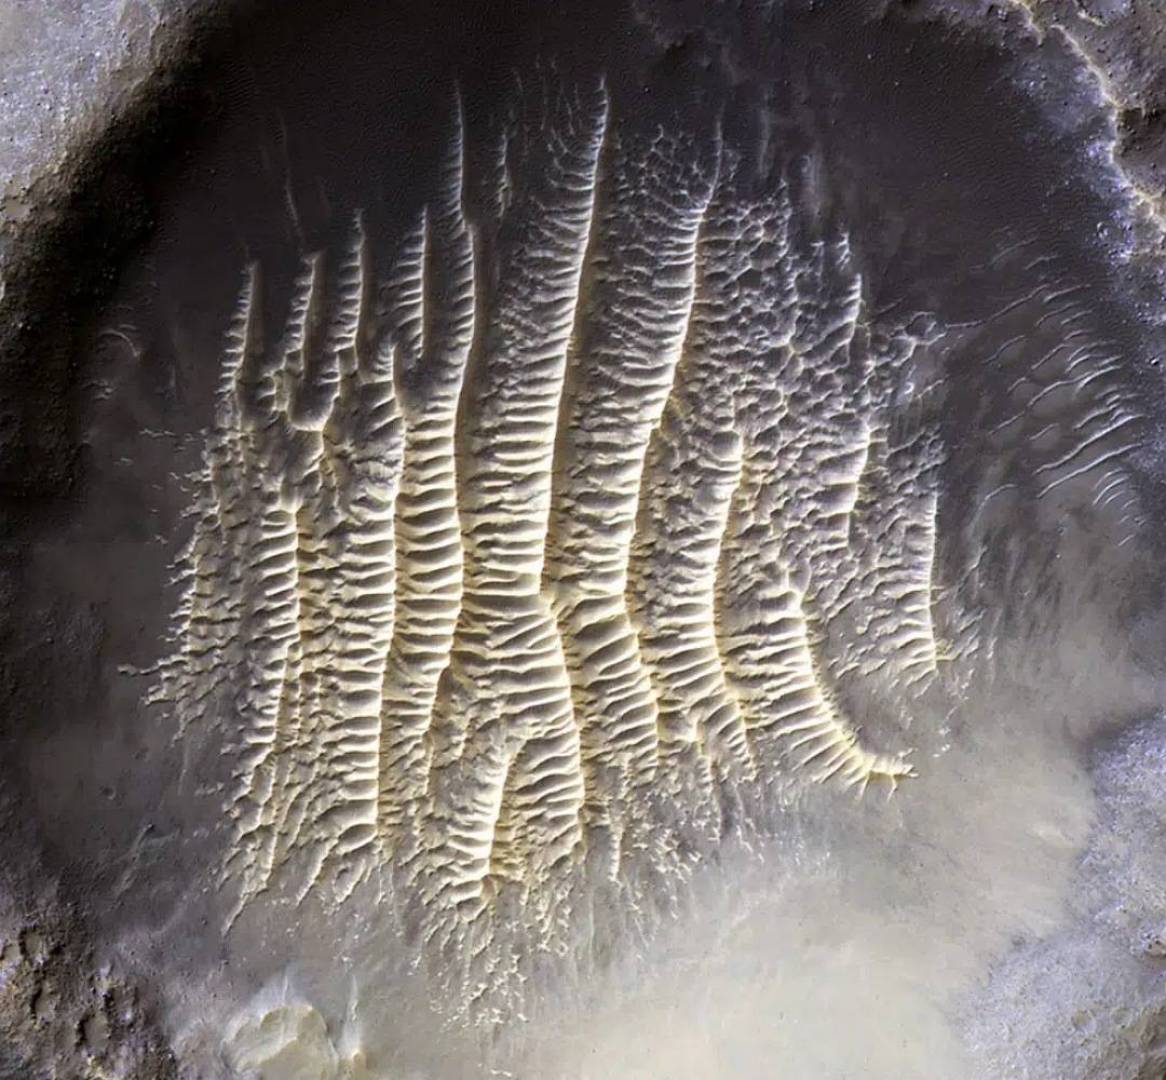 وصفتها بالمذهلة...ناسا تنشر صورة لفوهة بركان على كوكب المريخ